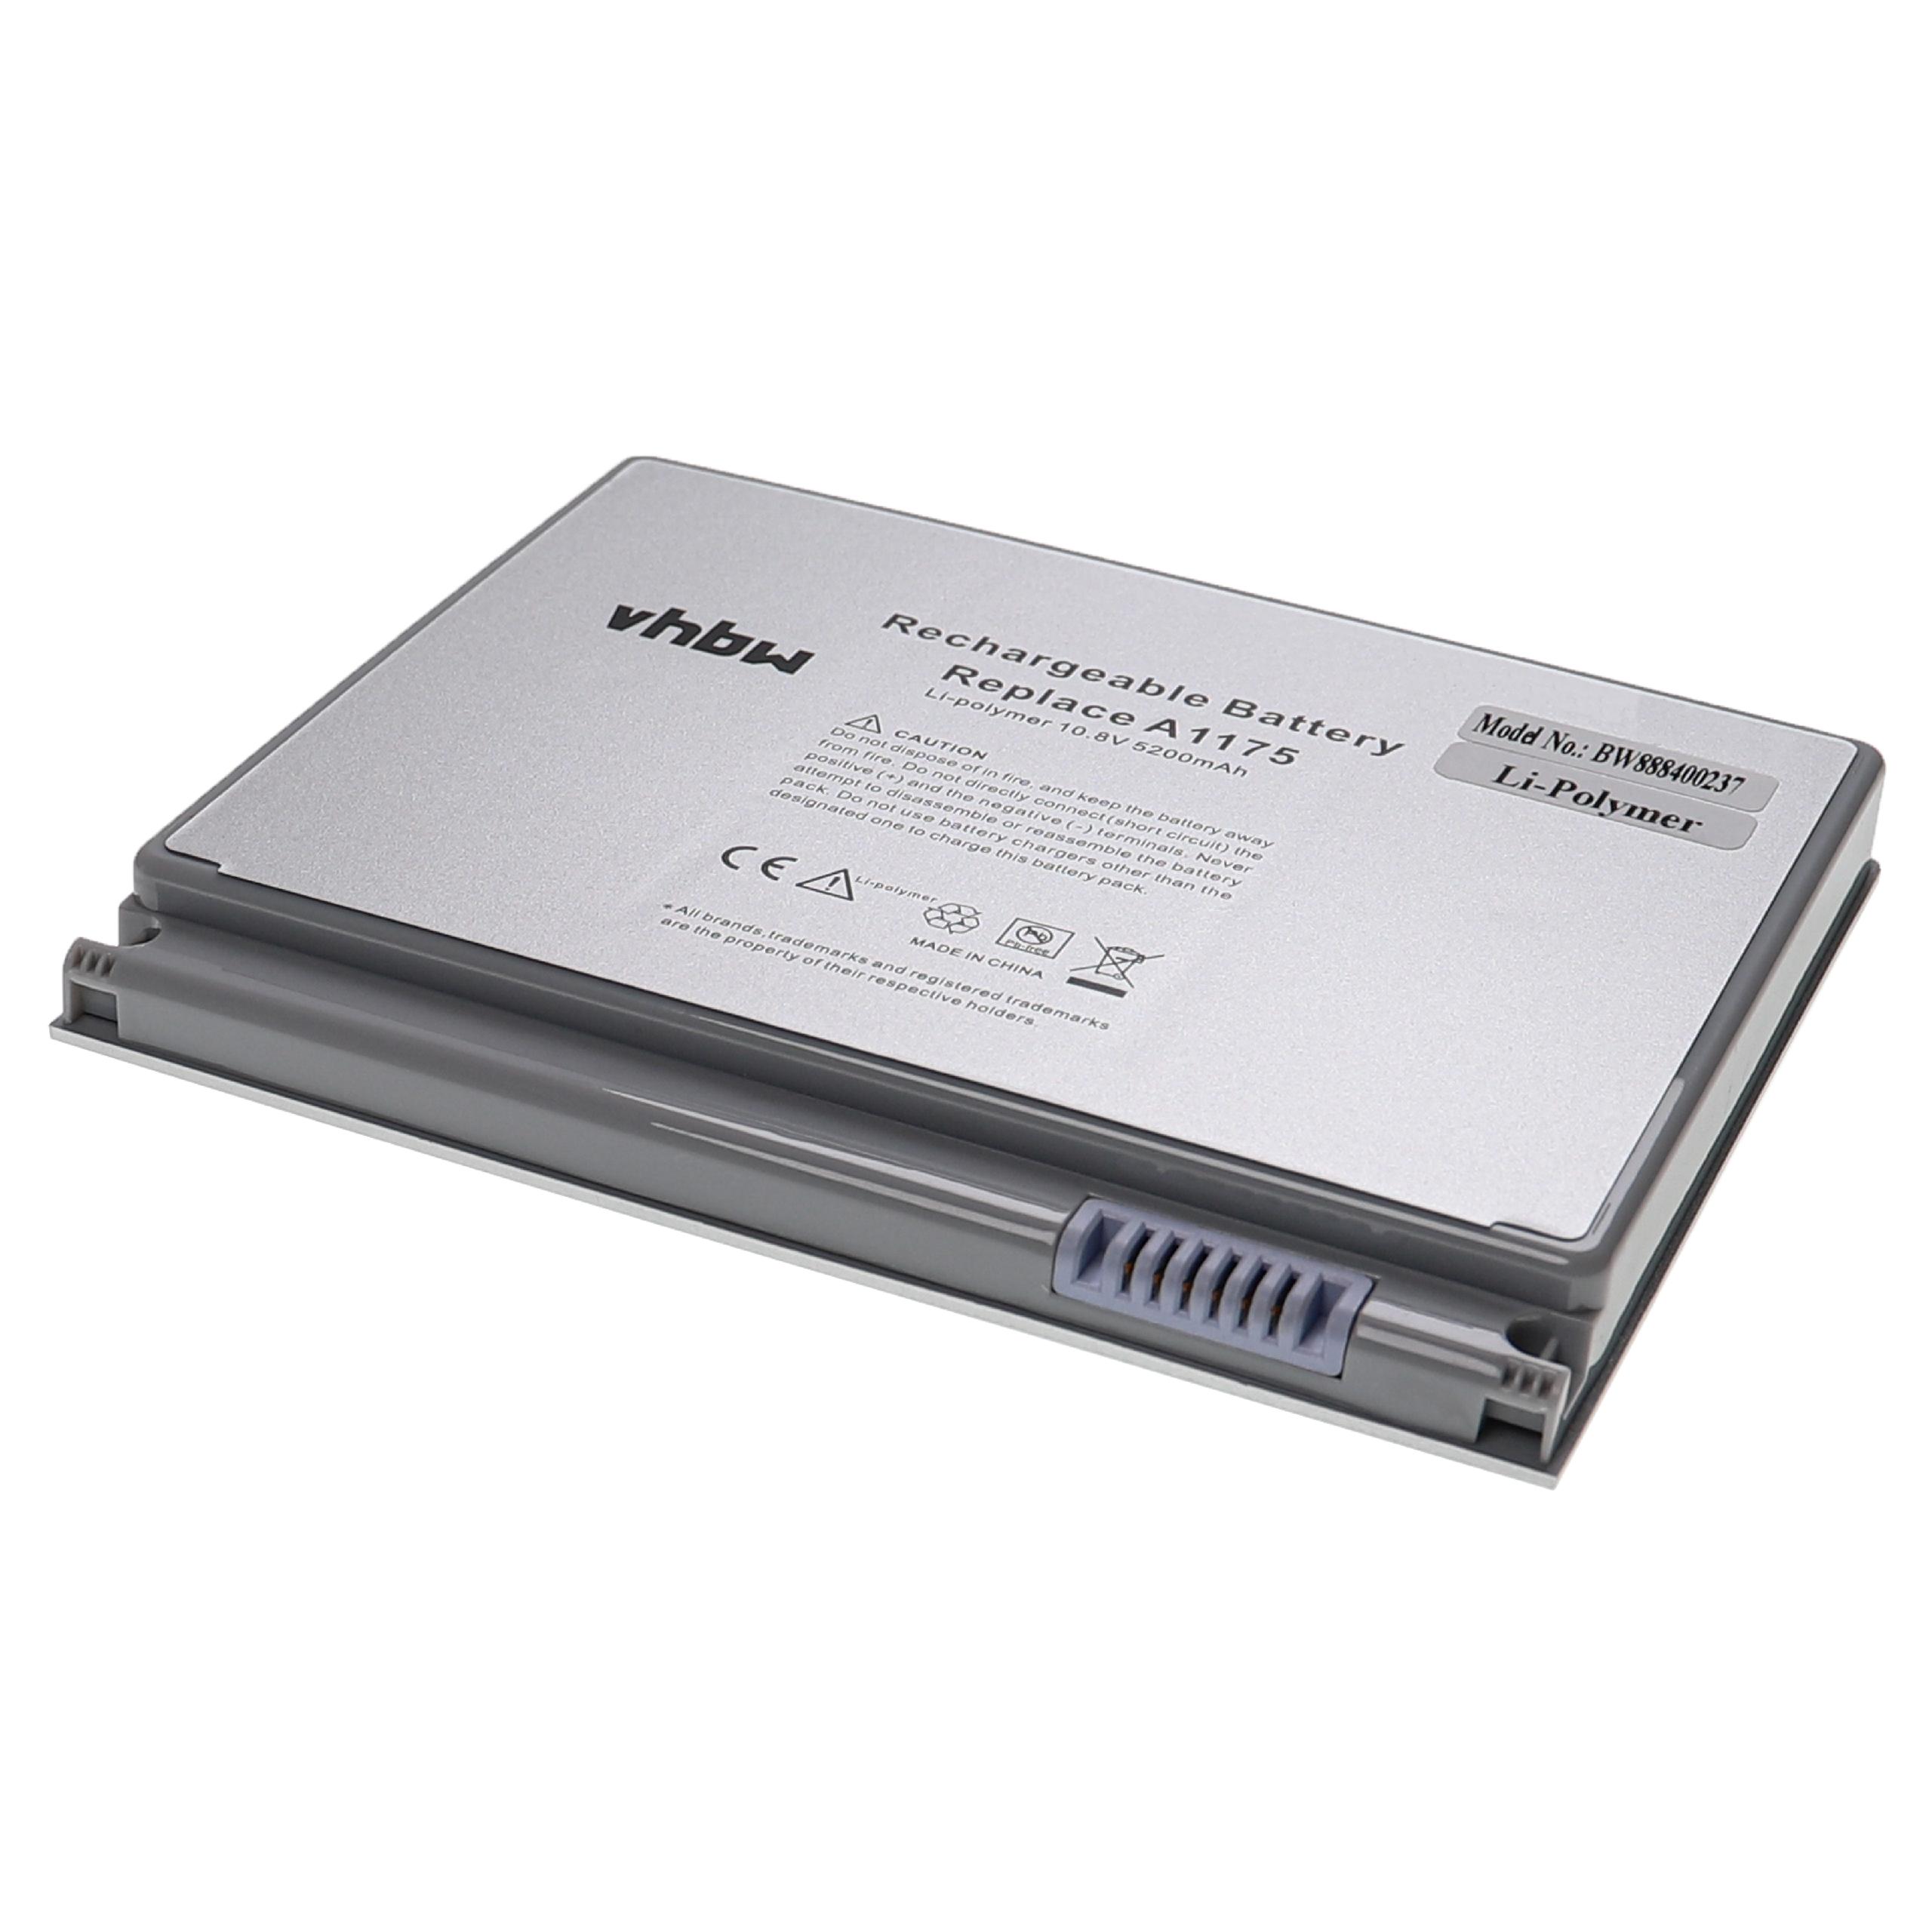 Notebook Battery Replacement for Apple A1175, MA348, MA348/A, MA348G/A, MA348J/A - 5200mAh 10.8V Li-polymer